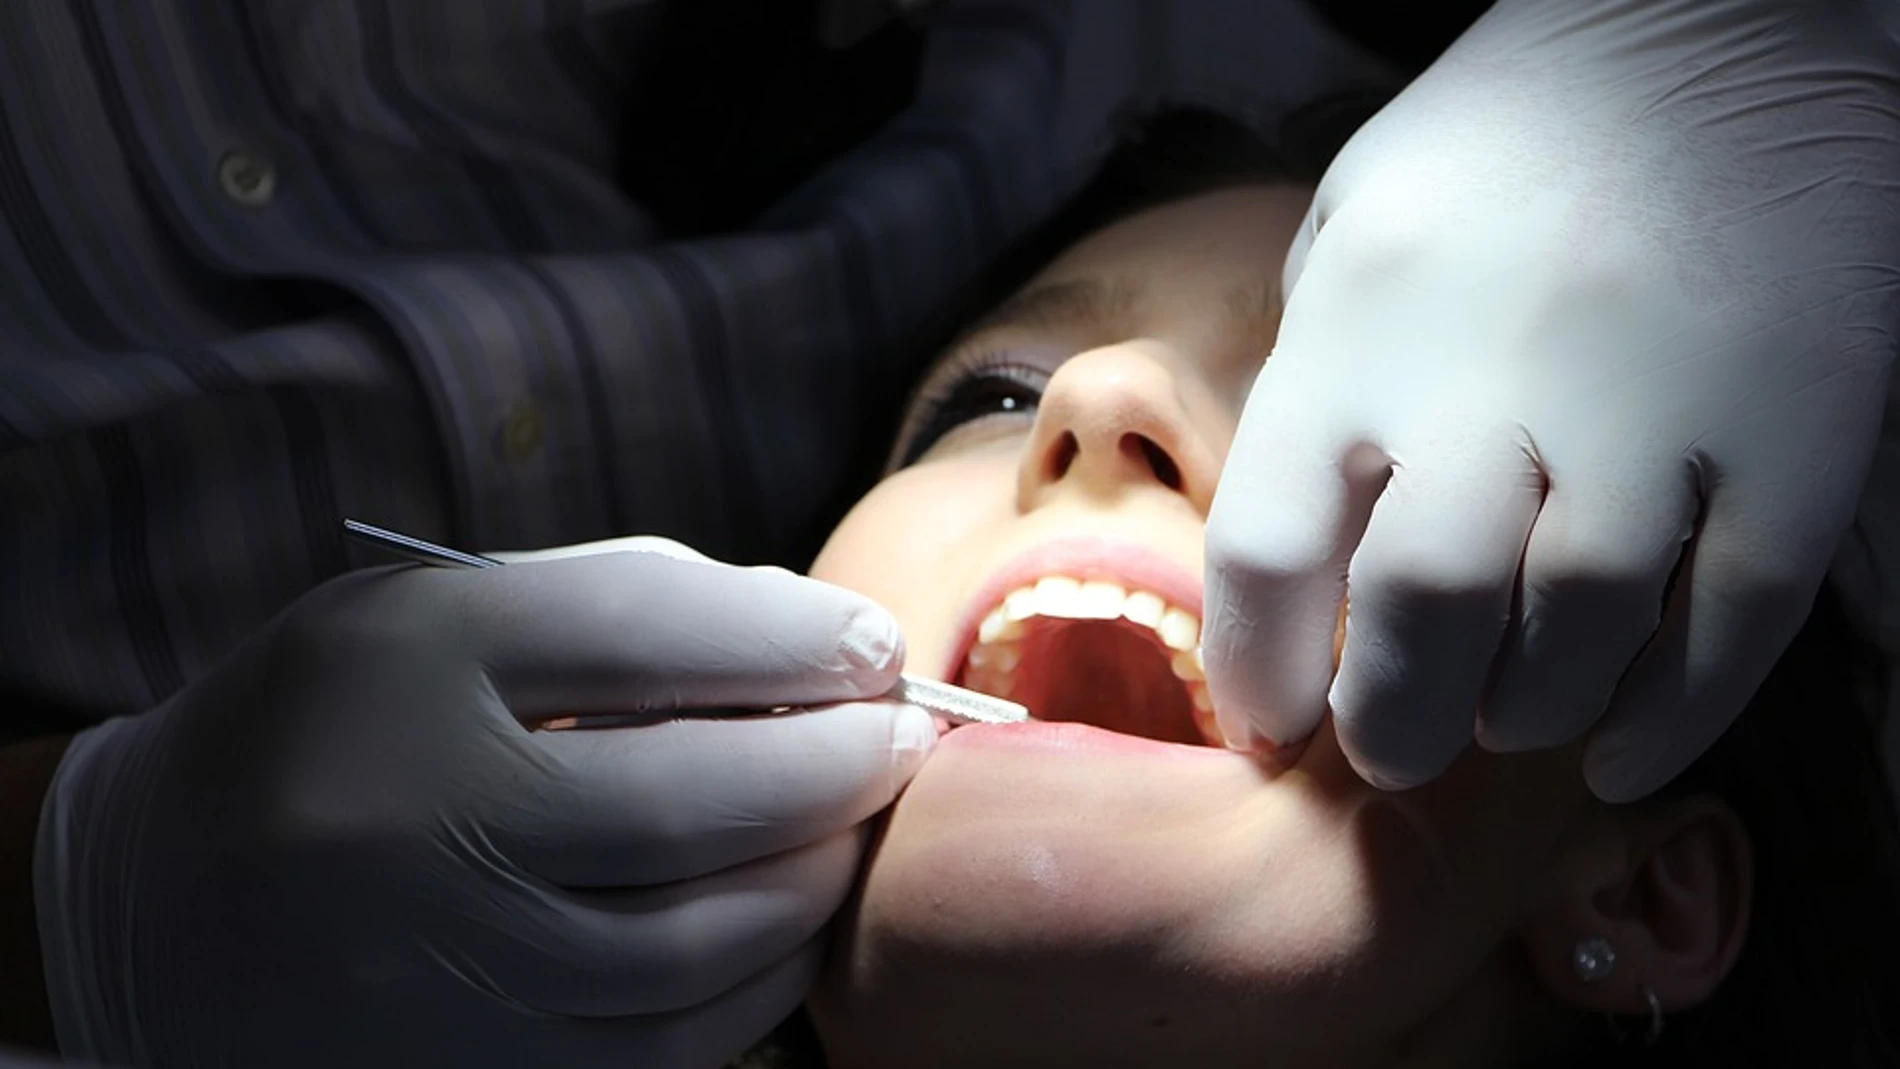 La visita al dentista puede descubrir que tienes celiaquía